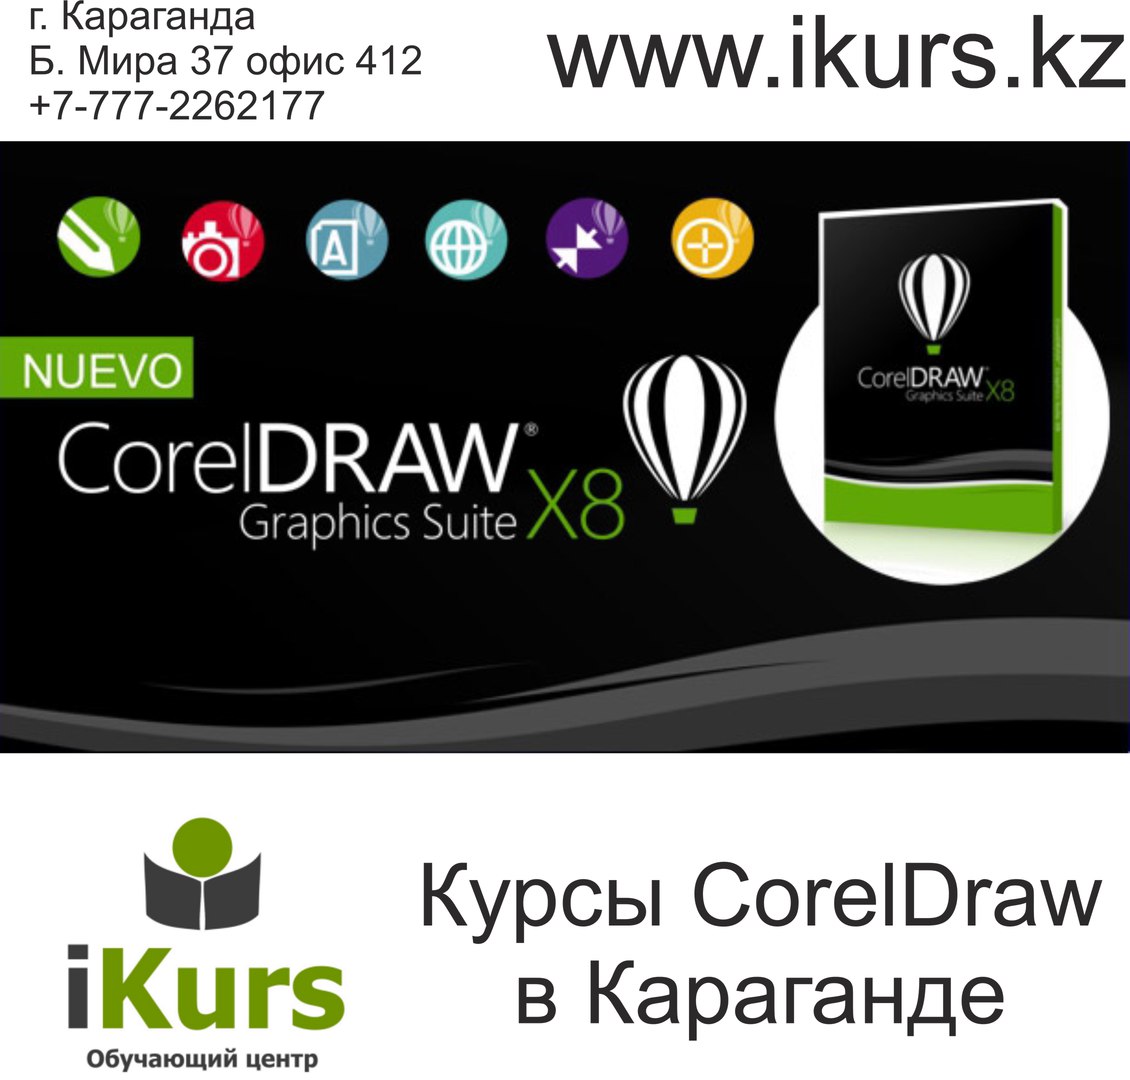 Курсы CorelDraw в Караганде. Курсы компьютерной графики и дизайна в обучающем центре Ikurs